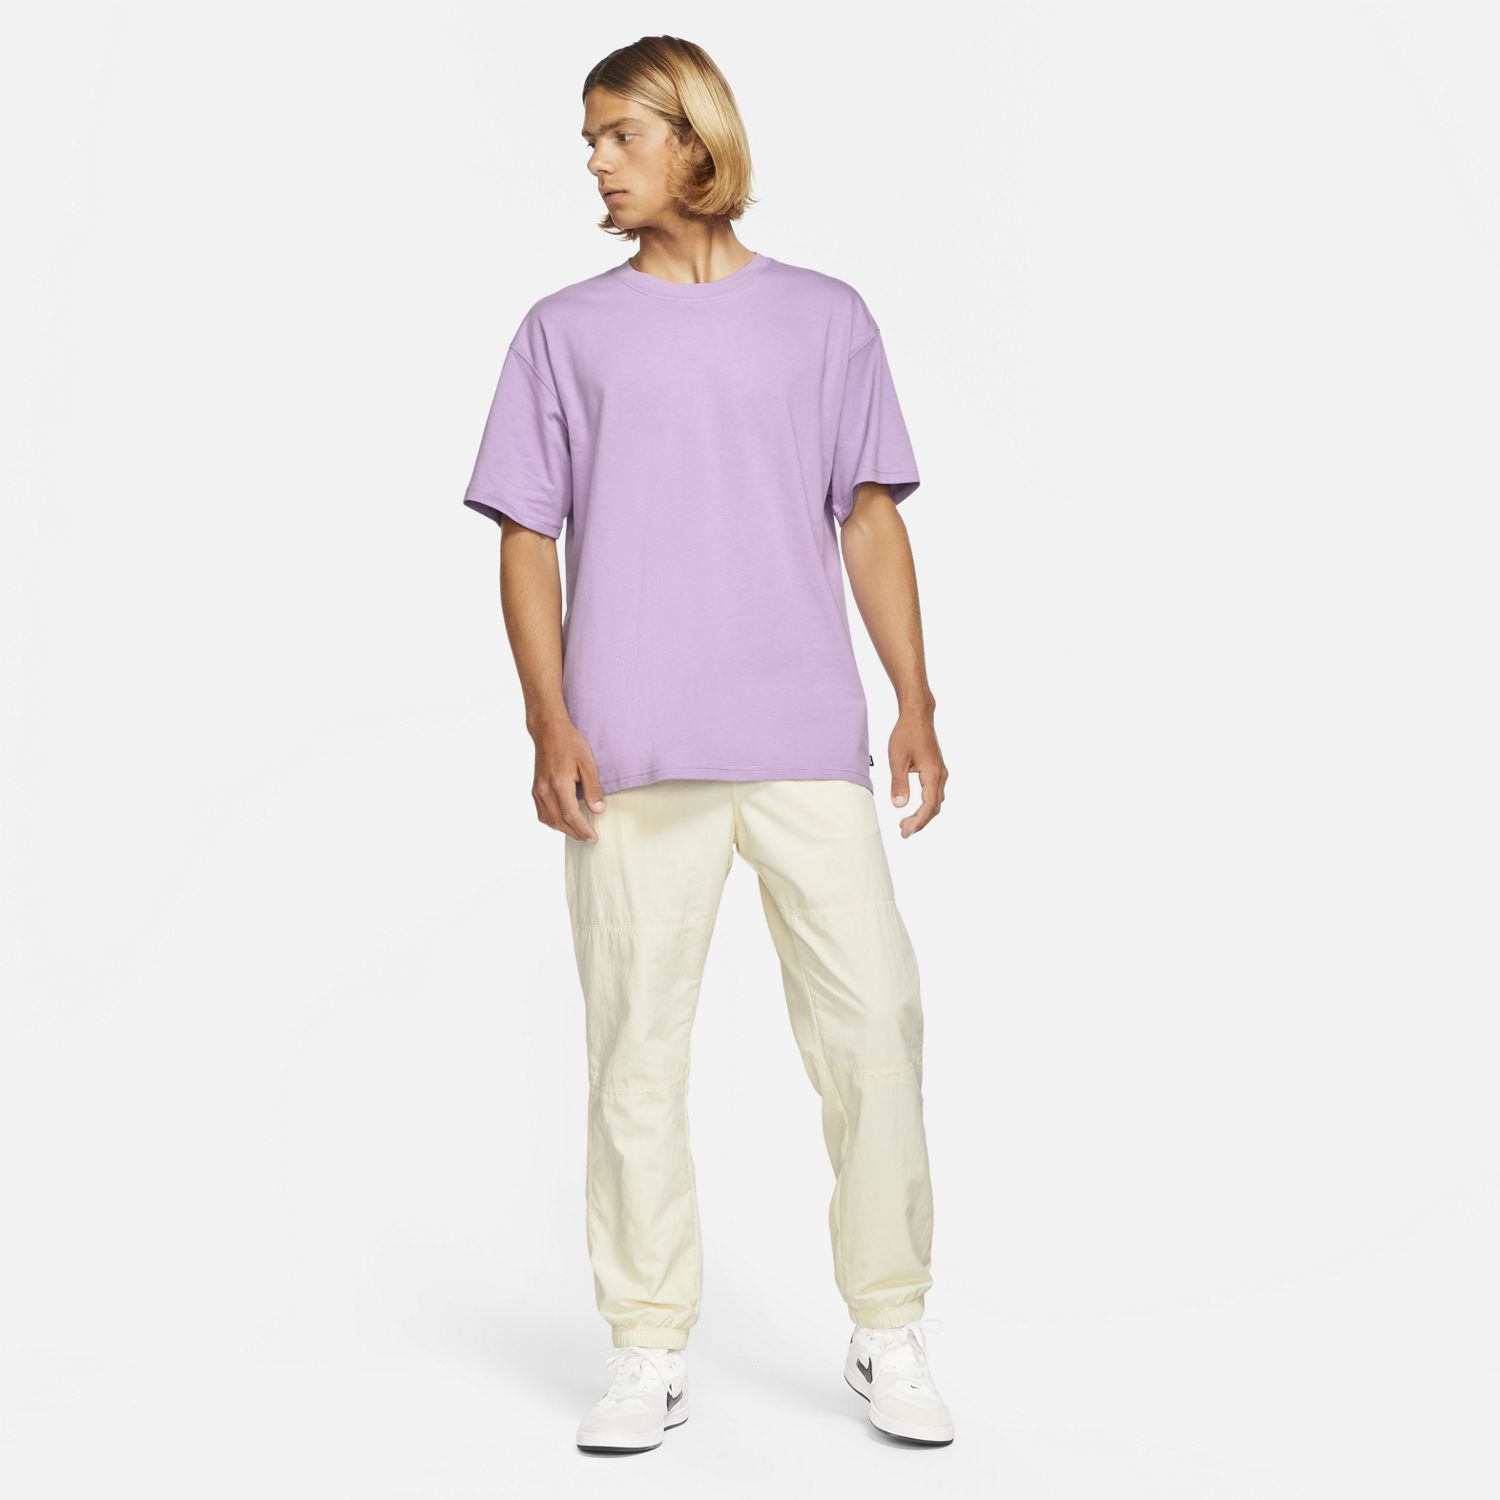 Nike SB Skate T-Shirt Purple 05